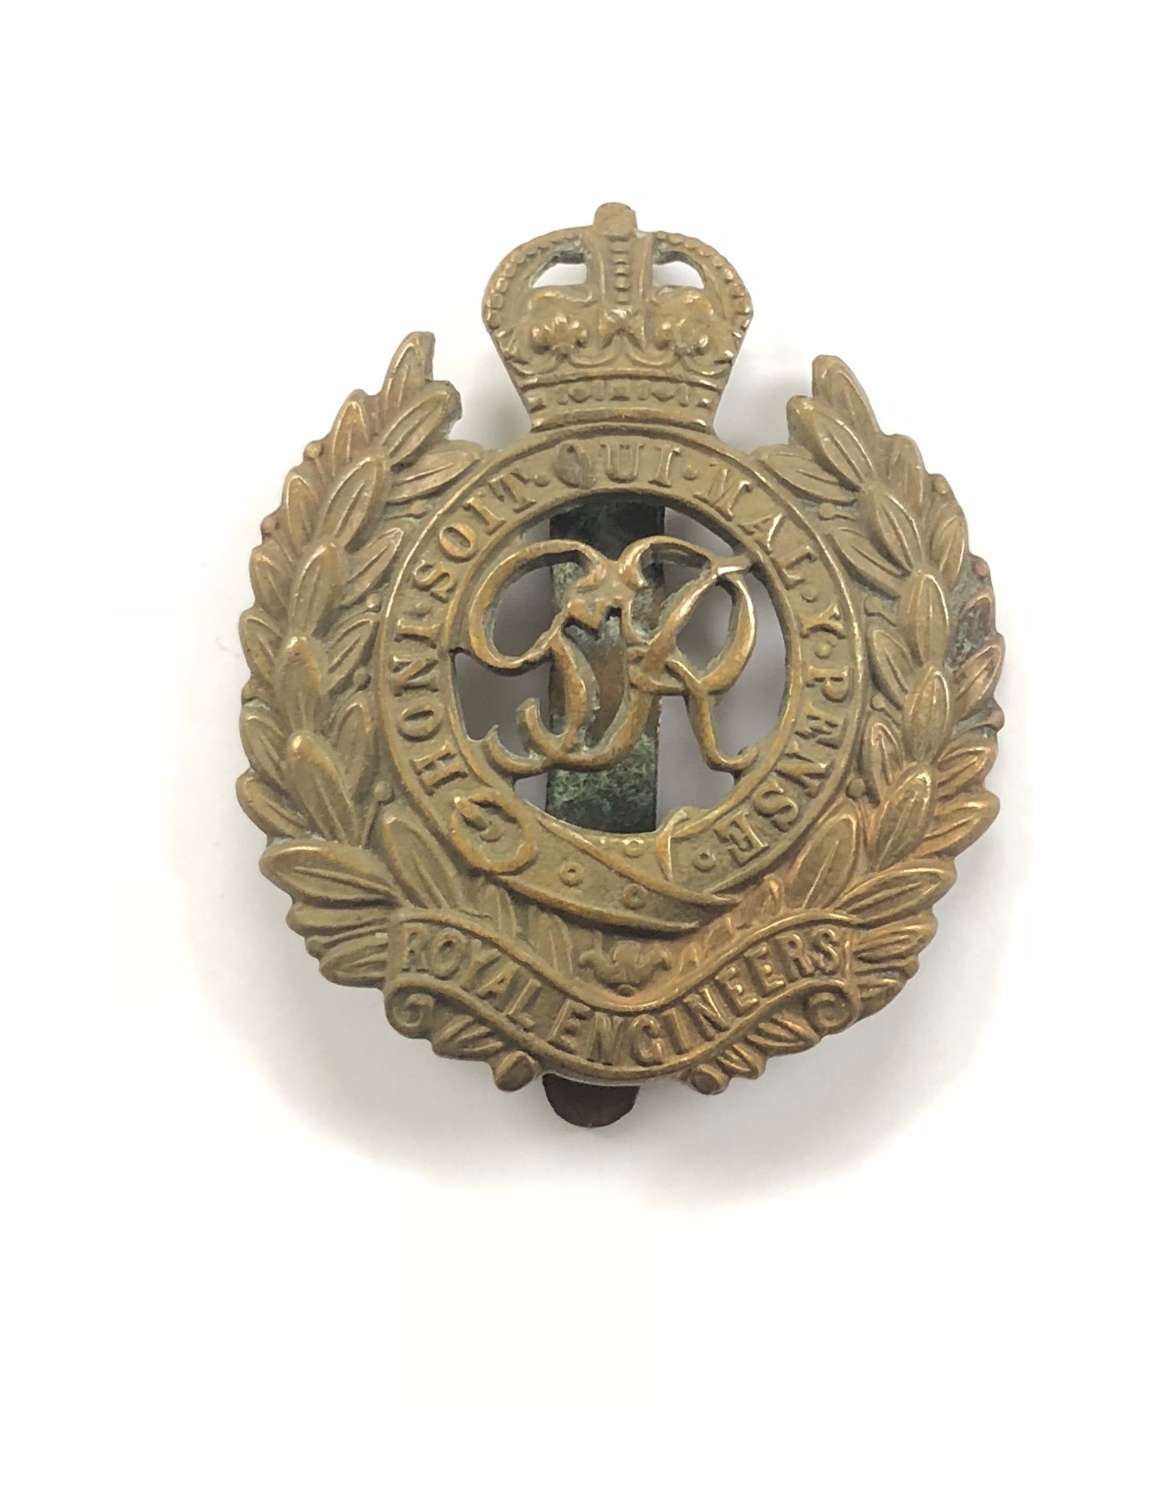 WW2 Royal Engineers Cap Badge.